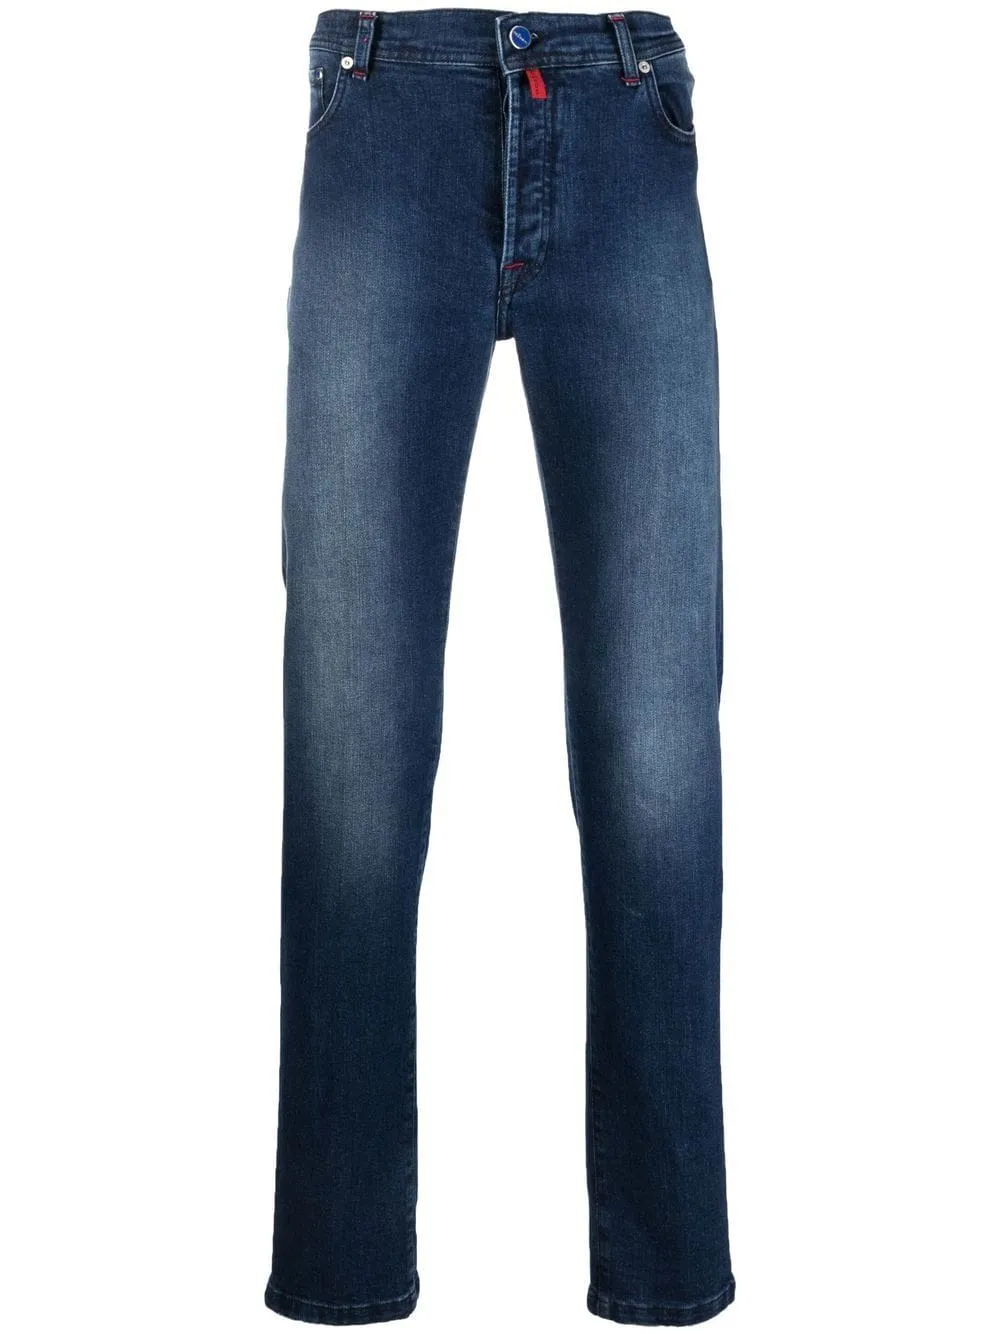 Дизайнерские мужские джинсы Kiton, прямые джинсы со средней посадкой, весенне-осенние длинные мужские брюки, джинсовые брюки нового стиля